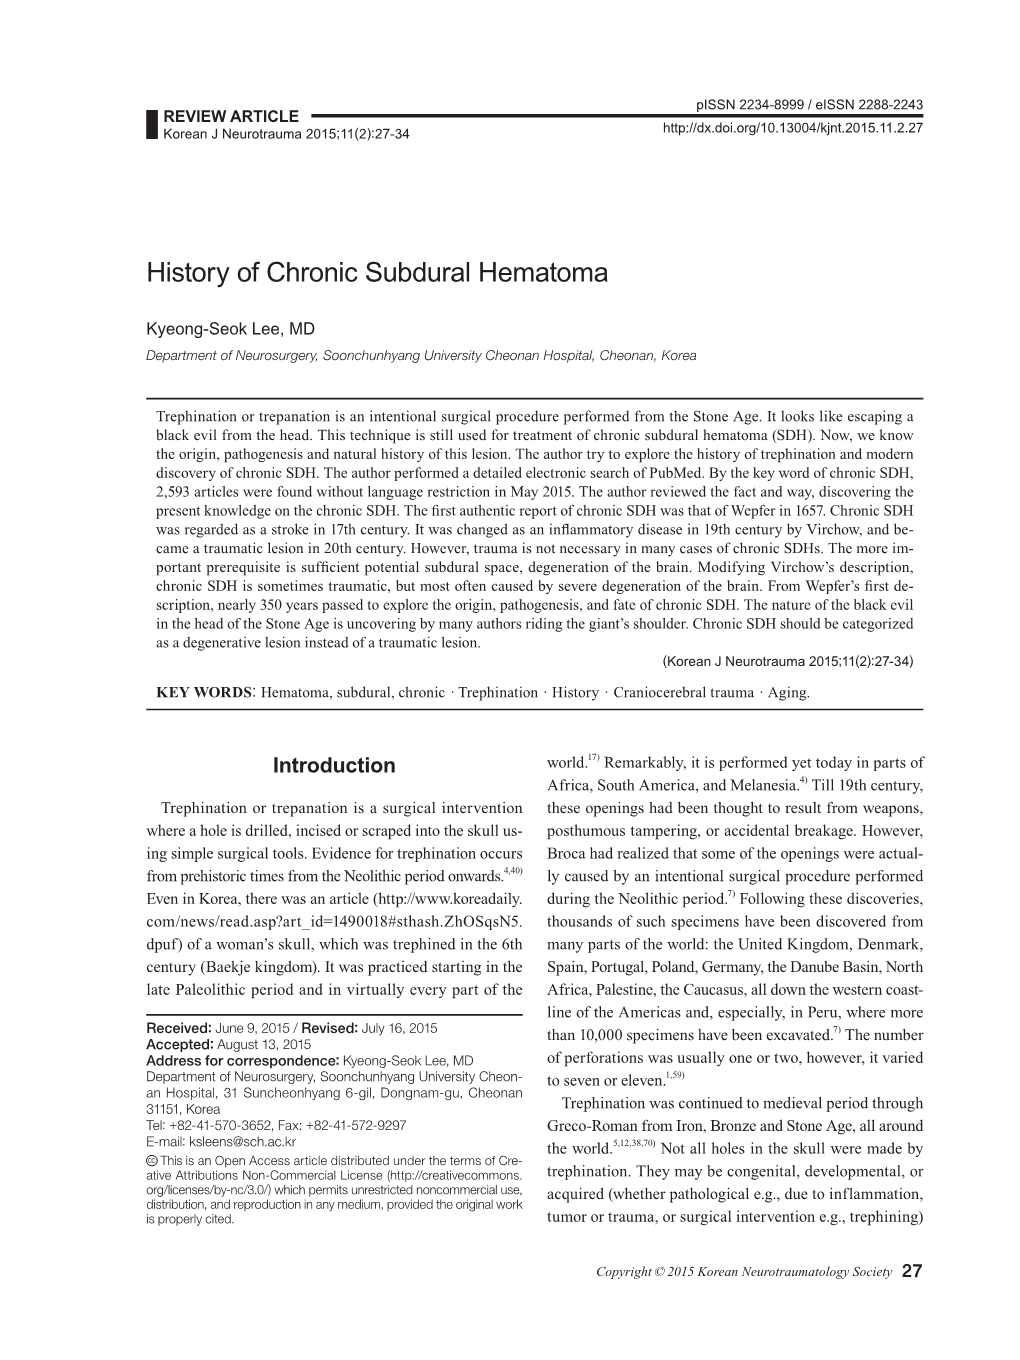 History of Chronic Subdural Hematoma